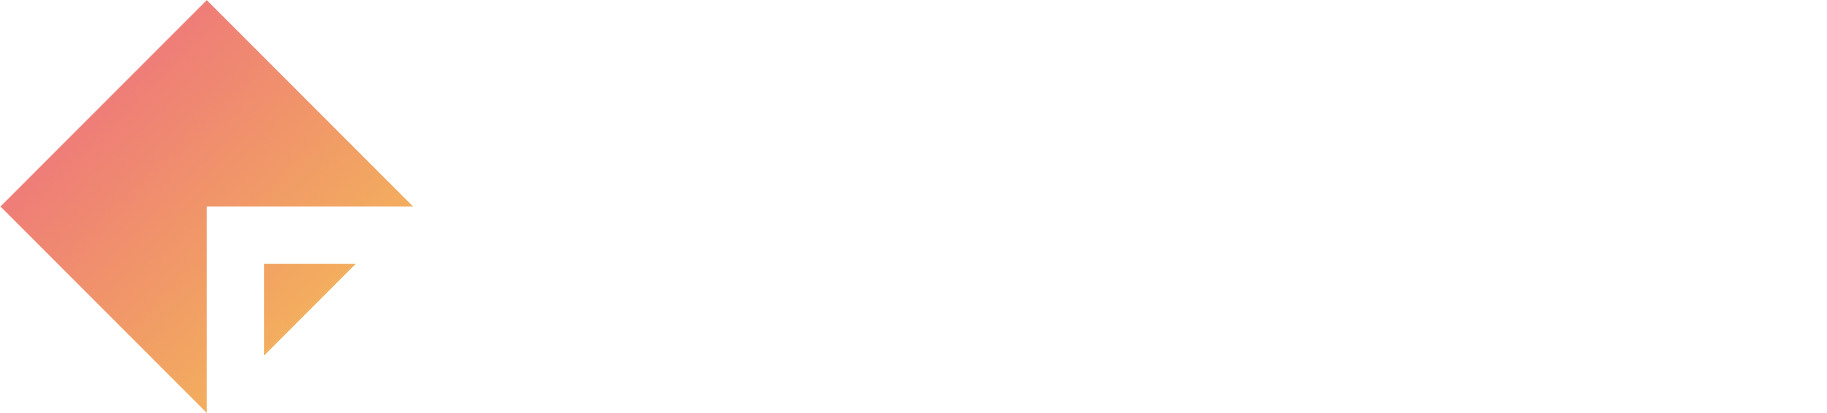 Last Quarter Studios logo